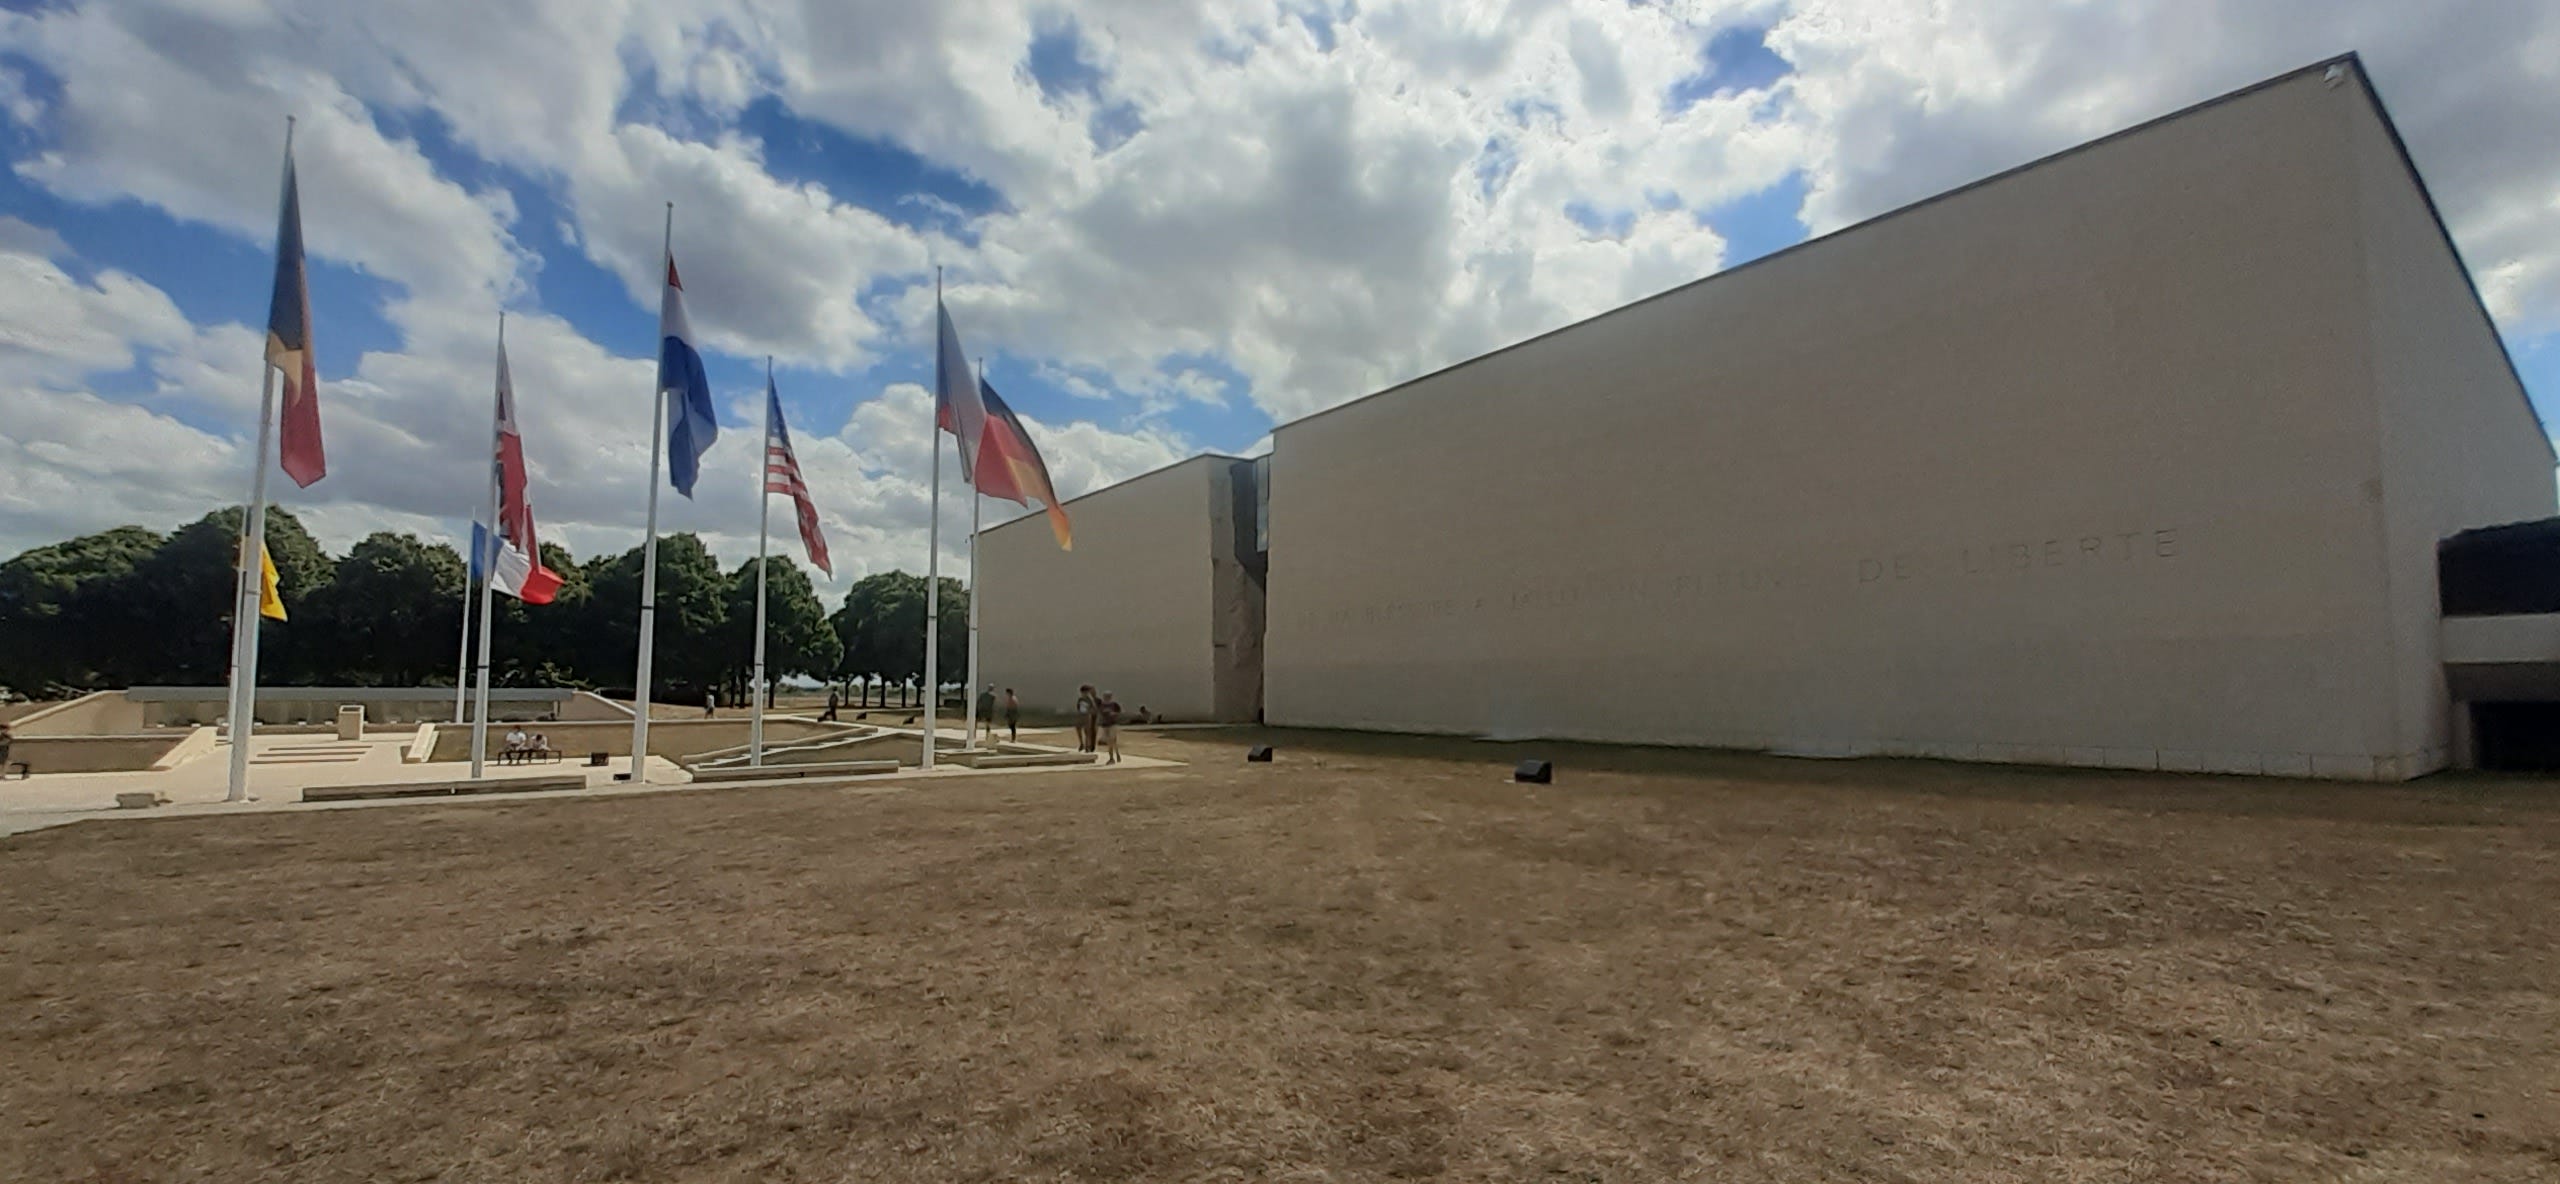 La facciata frontale del Memoriale di Caen: un parco un po' secco per la calura estiva e diverse bandiere internazionali che sventolano all'entrata. Le mura sono grigio chiaro e lisce, come un unico blocco di cemento.